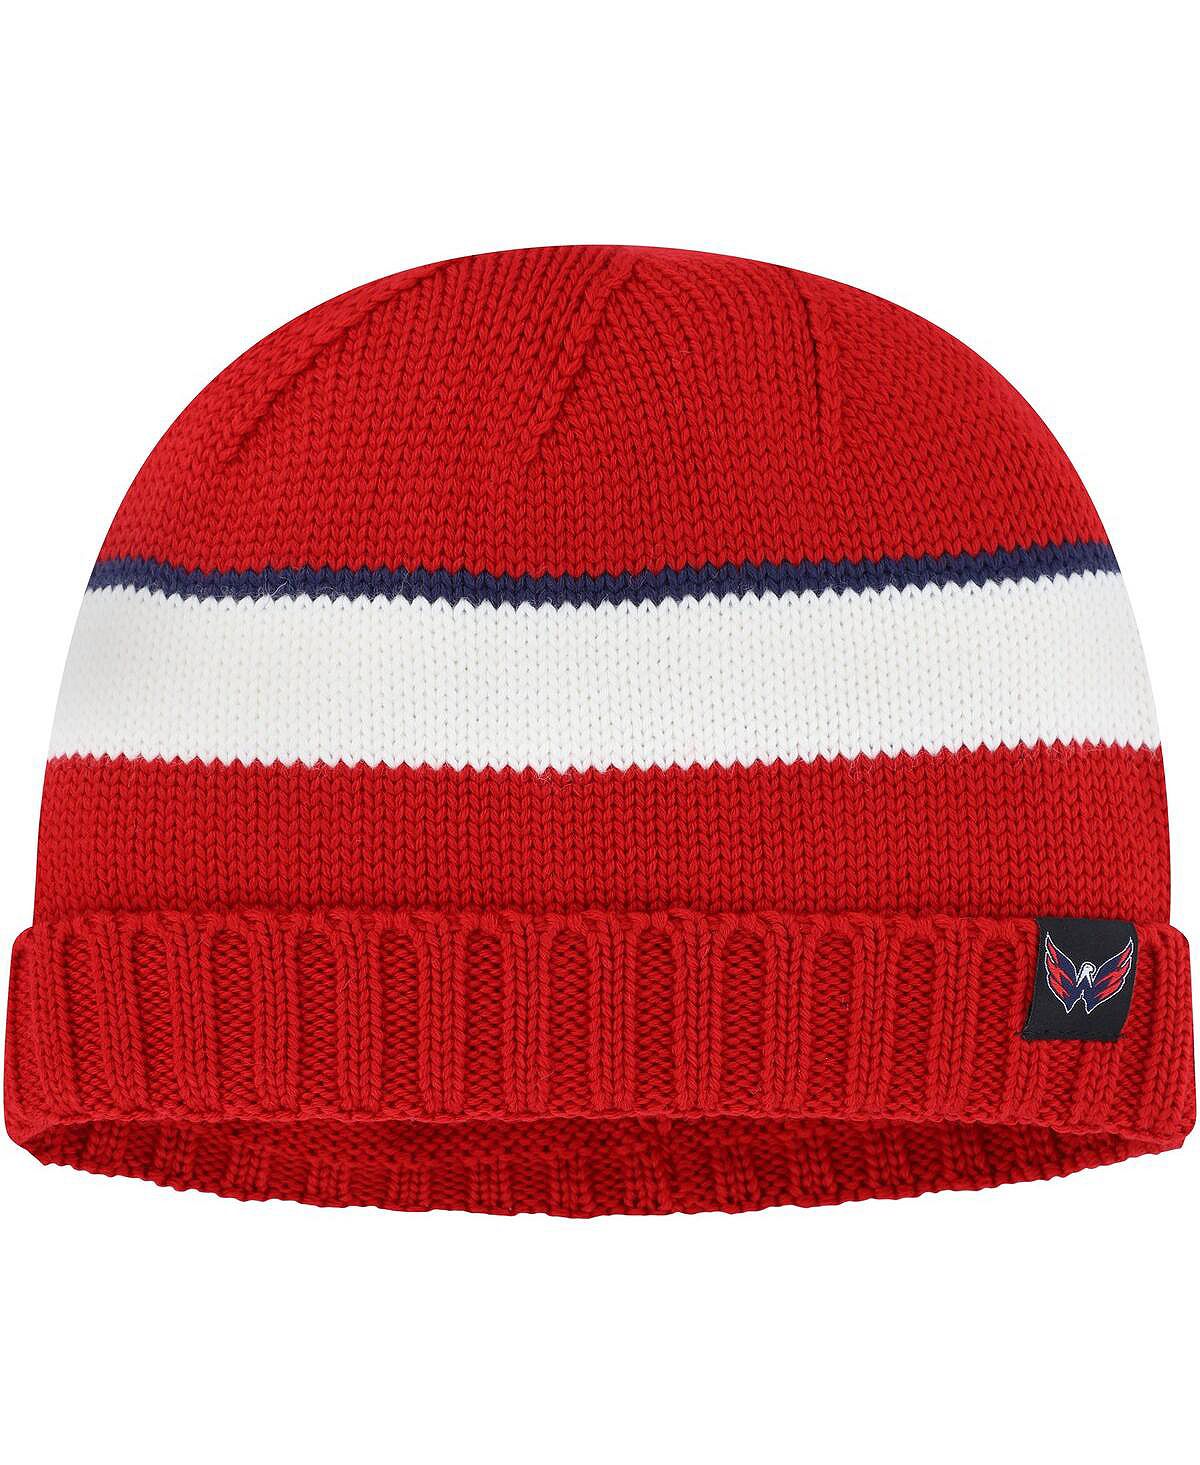 Мужская красная рыбацкая шапка Washington Capitals adidas noryalli красная мужская шапка noryalli